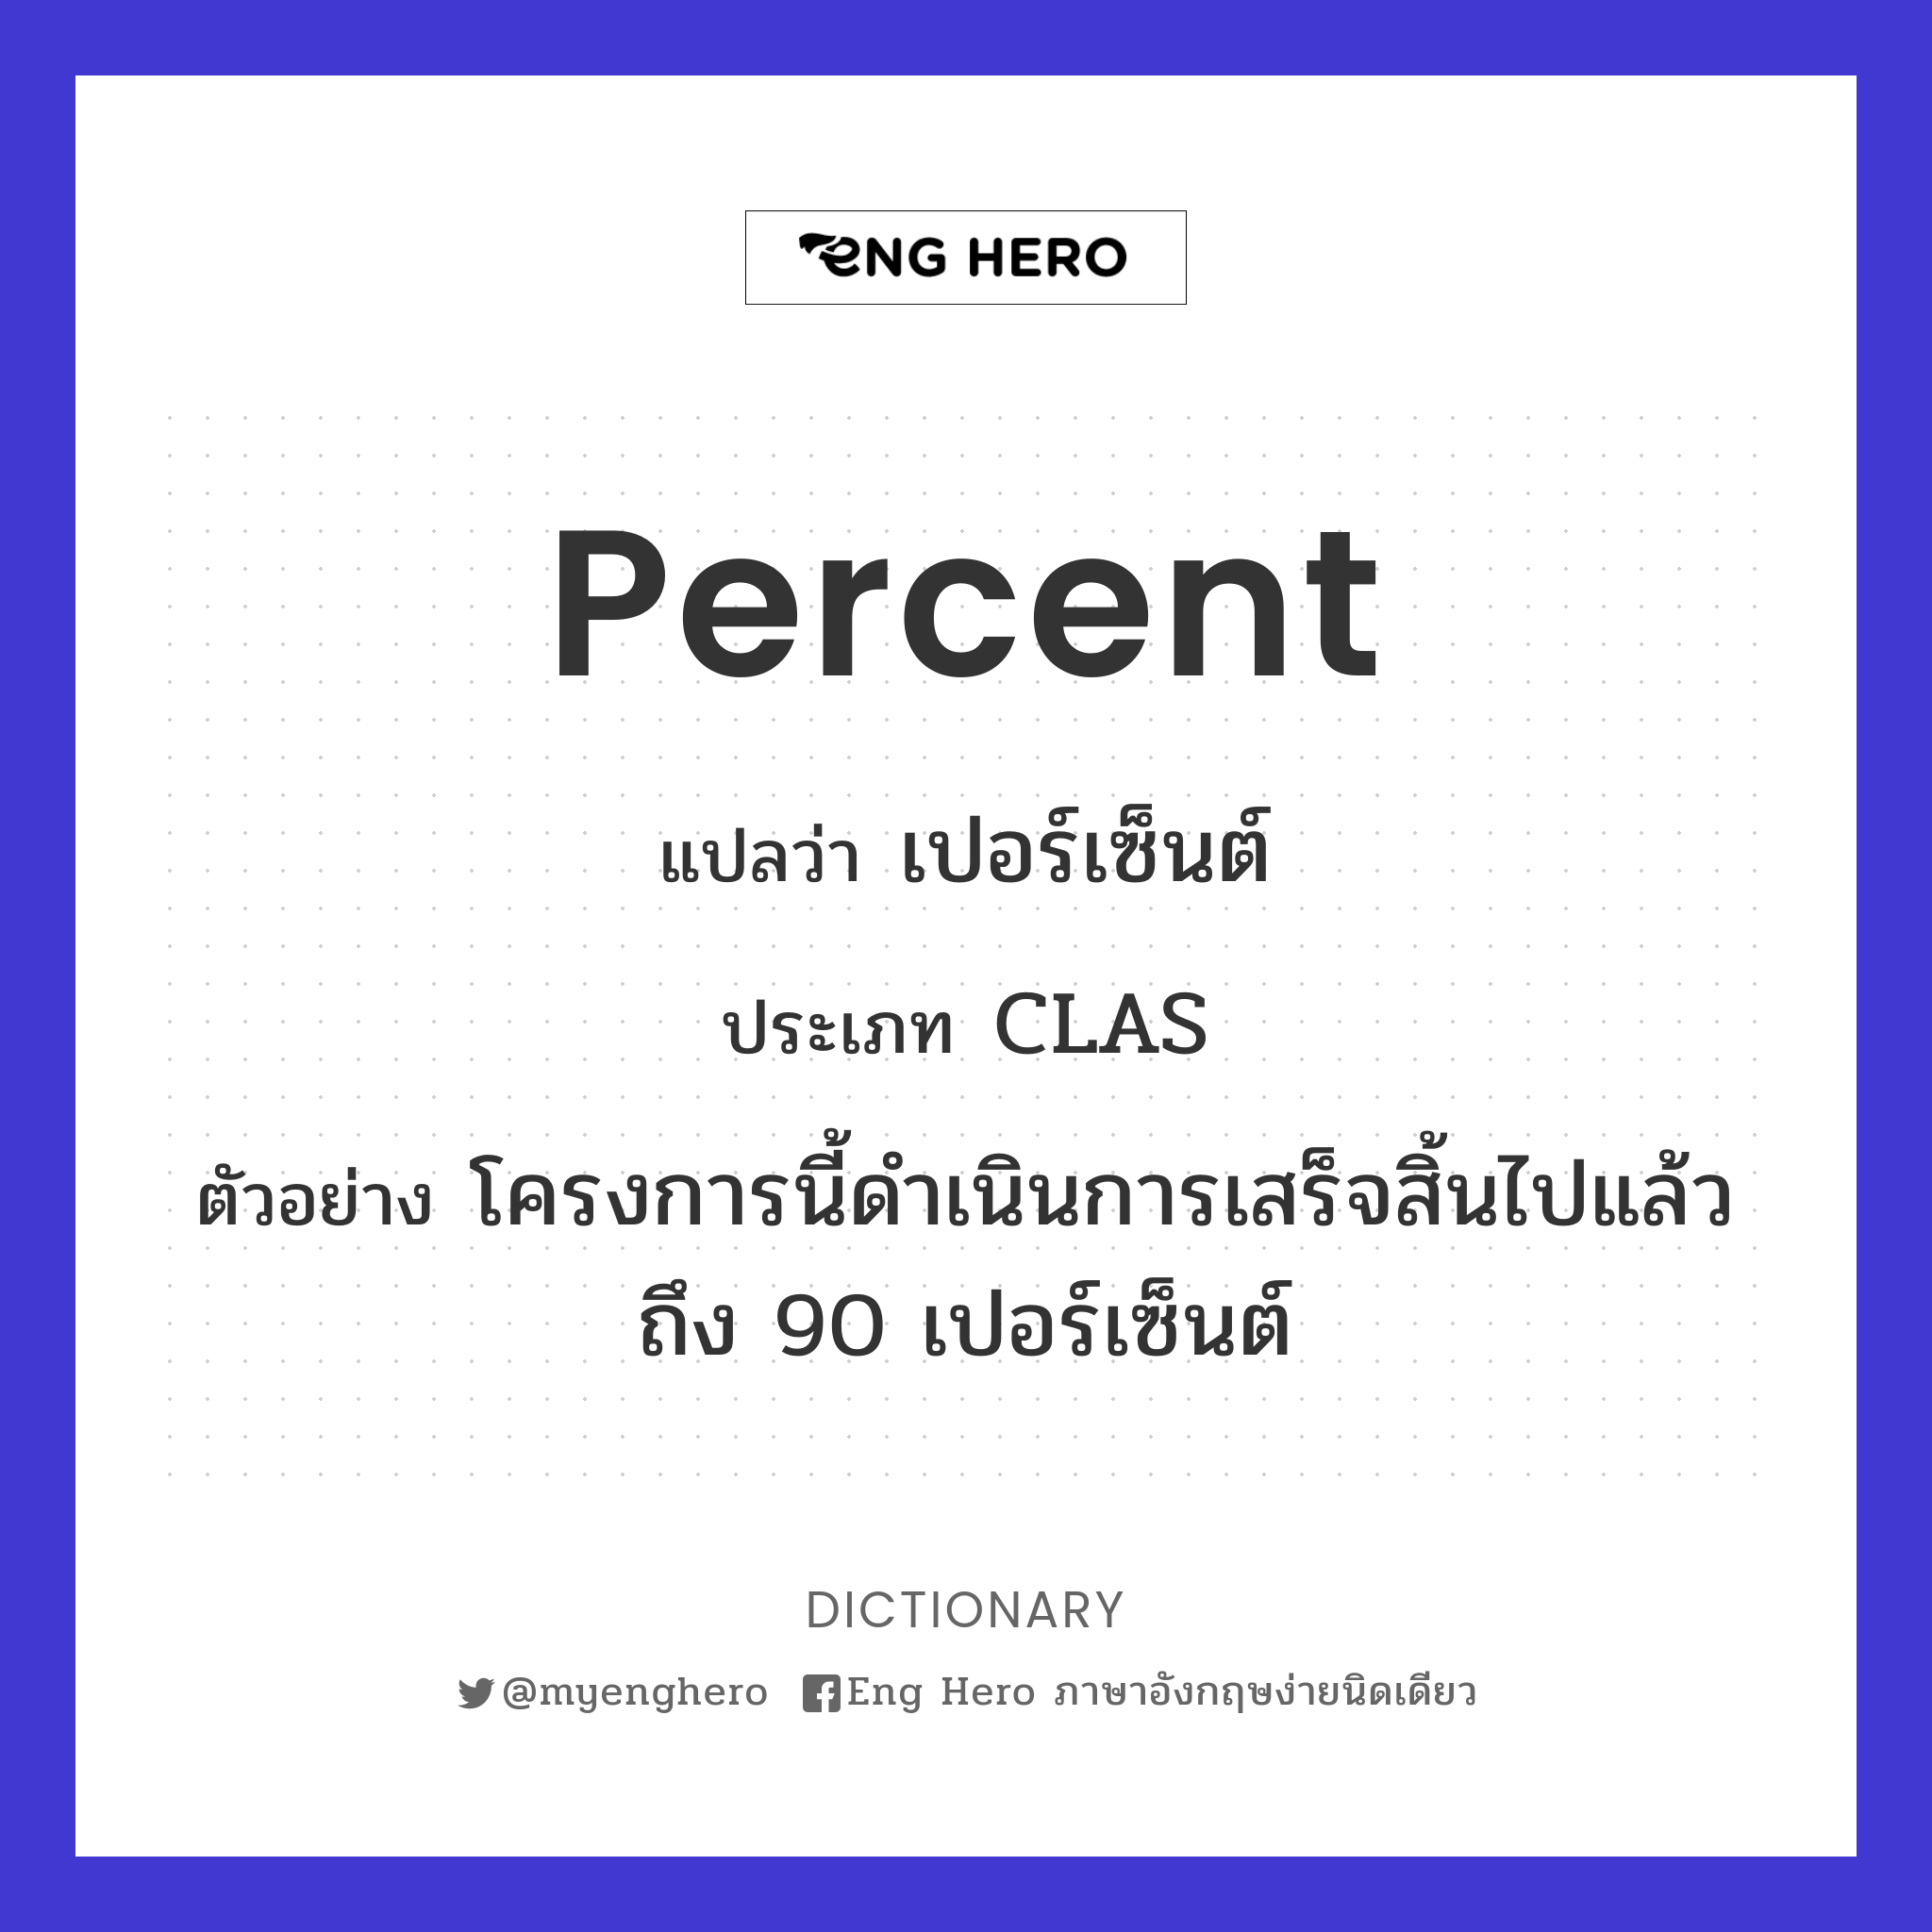 percent